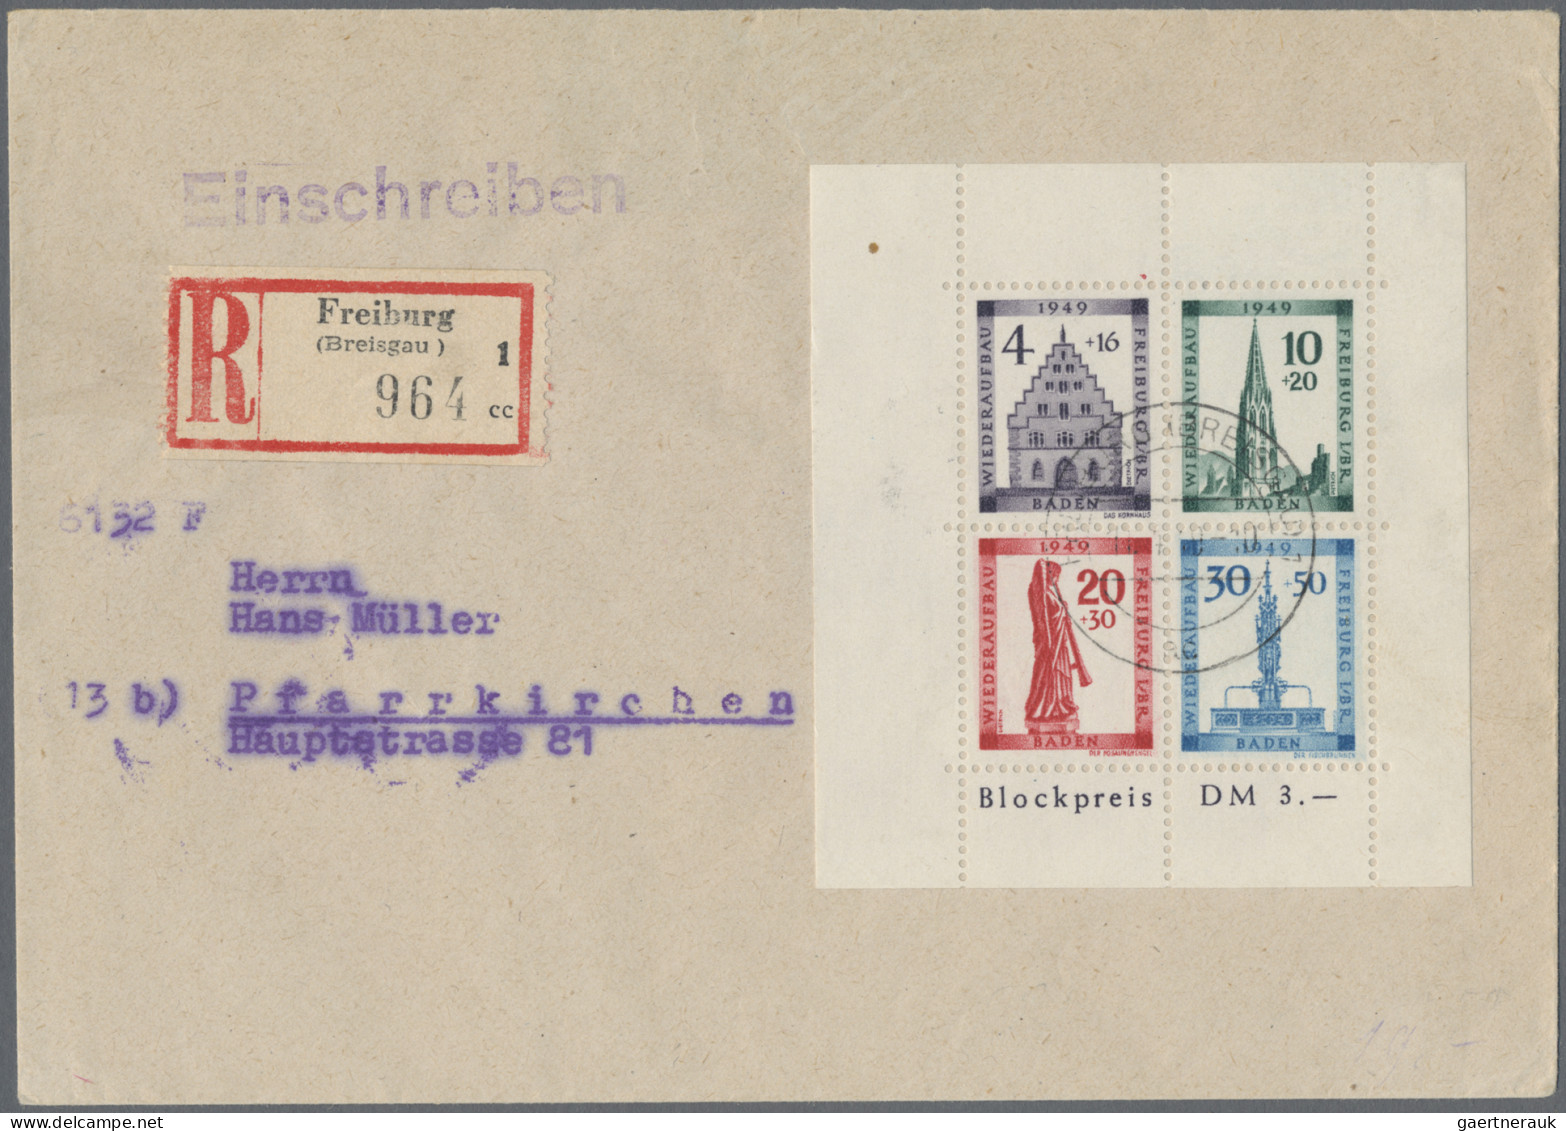 Französische Zone - Baden: 1946/1949 (ca.), interessenate Belegesammlung mit rei